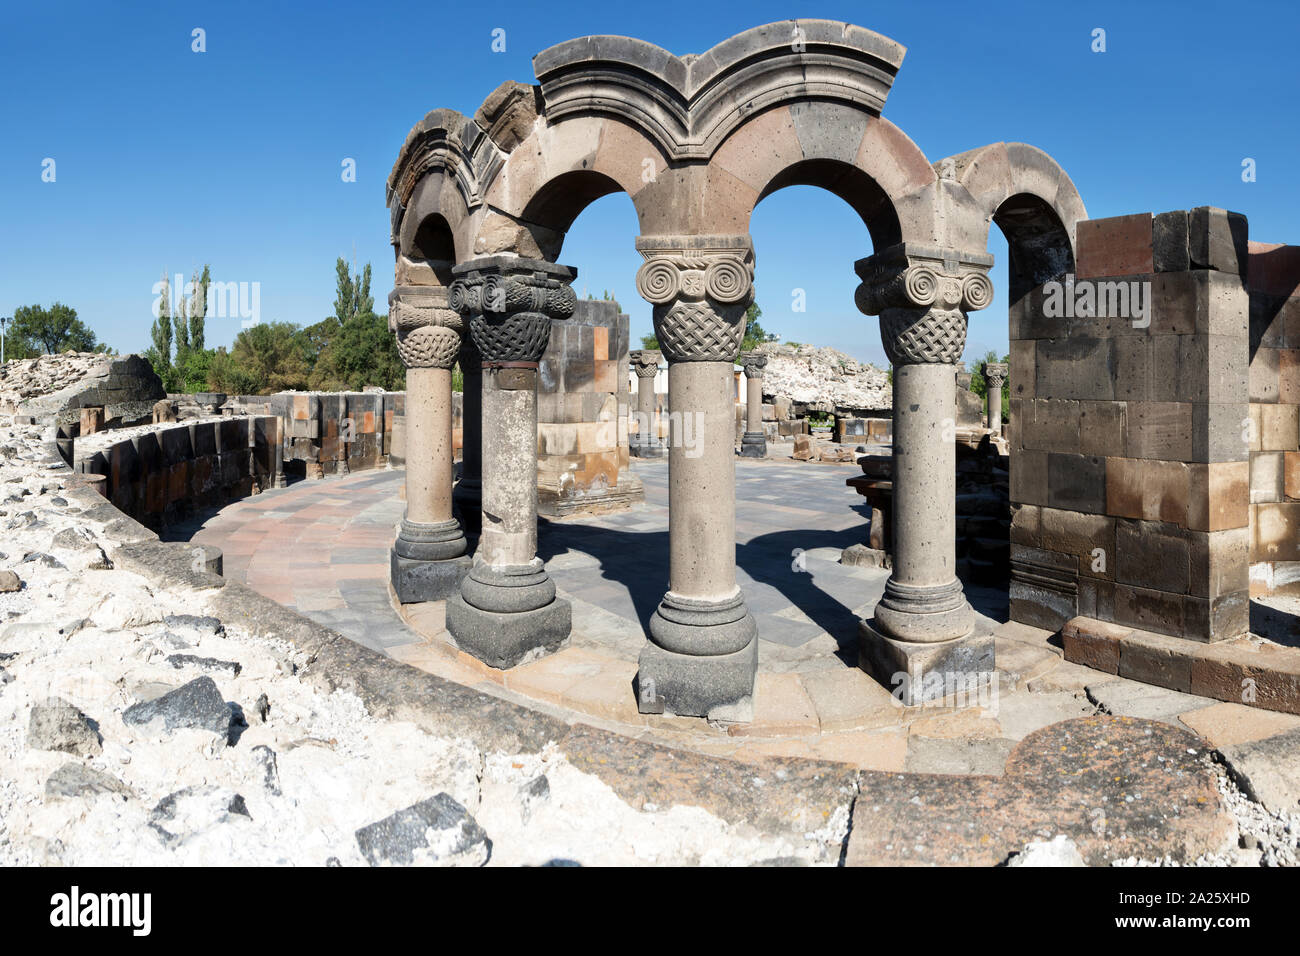 Zvartnots Cathedral ruins, Vagharshapat, Armenia Stock Photo